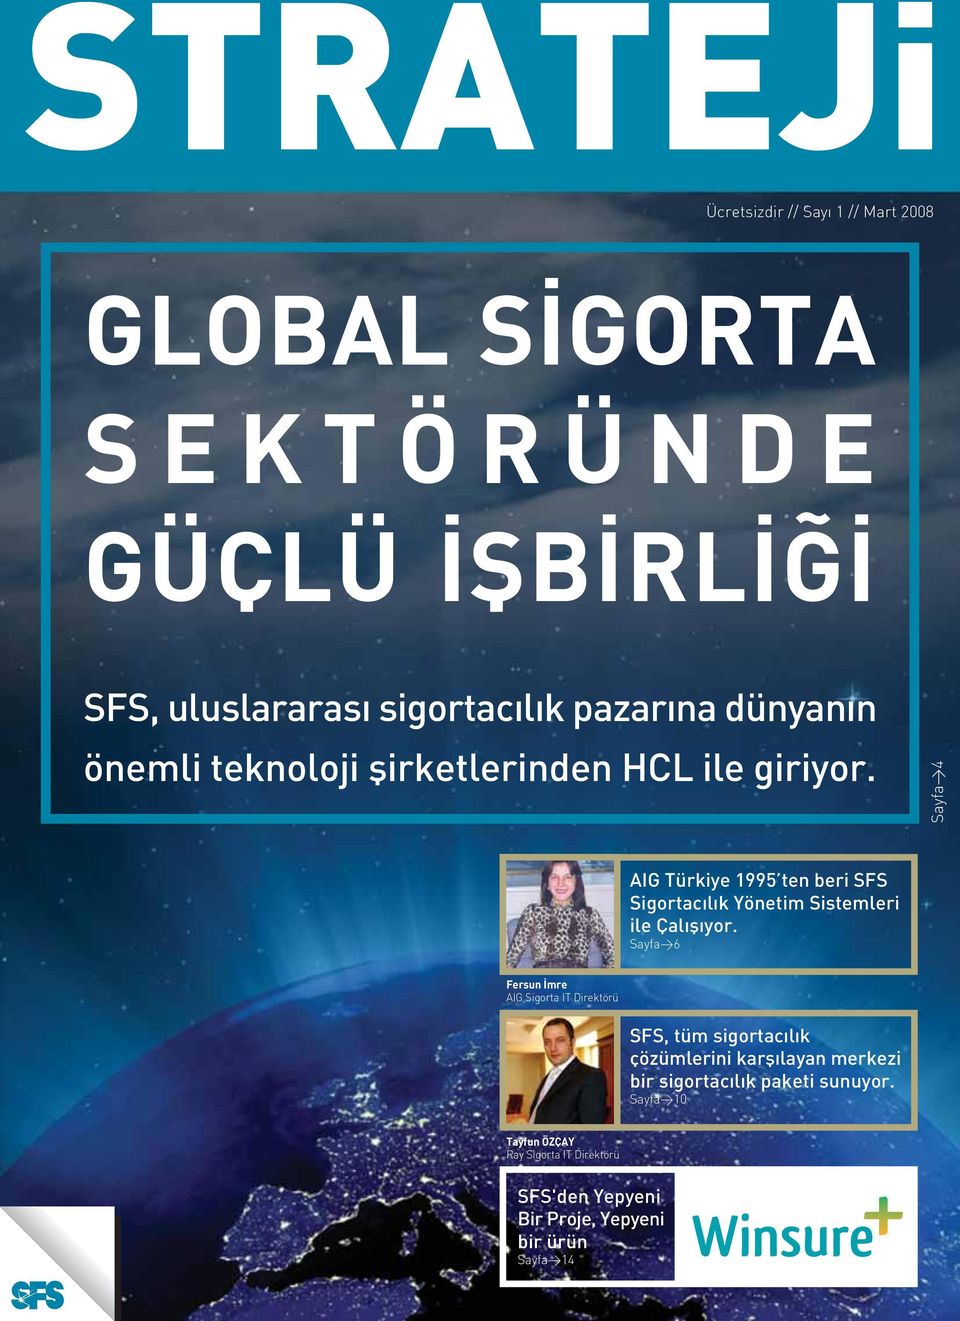 Sayfa>4 AIG Türkiye 1995 ten beri SFS Sigortacýlýk Yönetim Sistemleri ile Çalýþýyor.